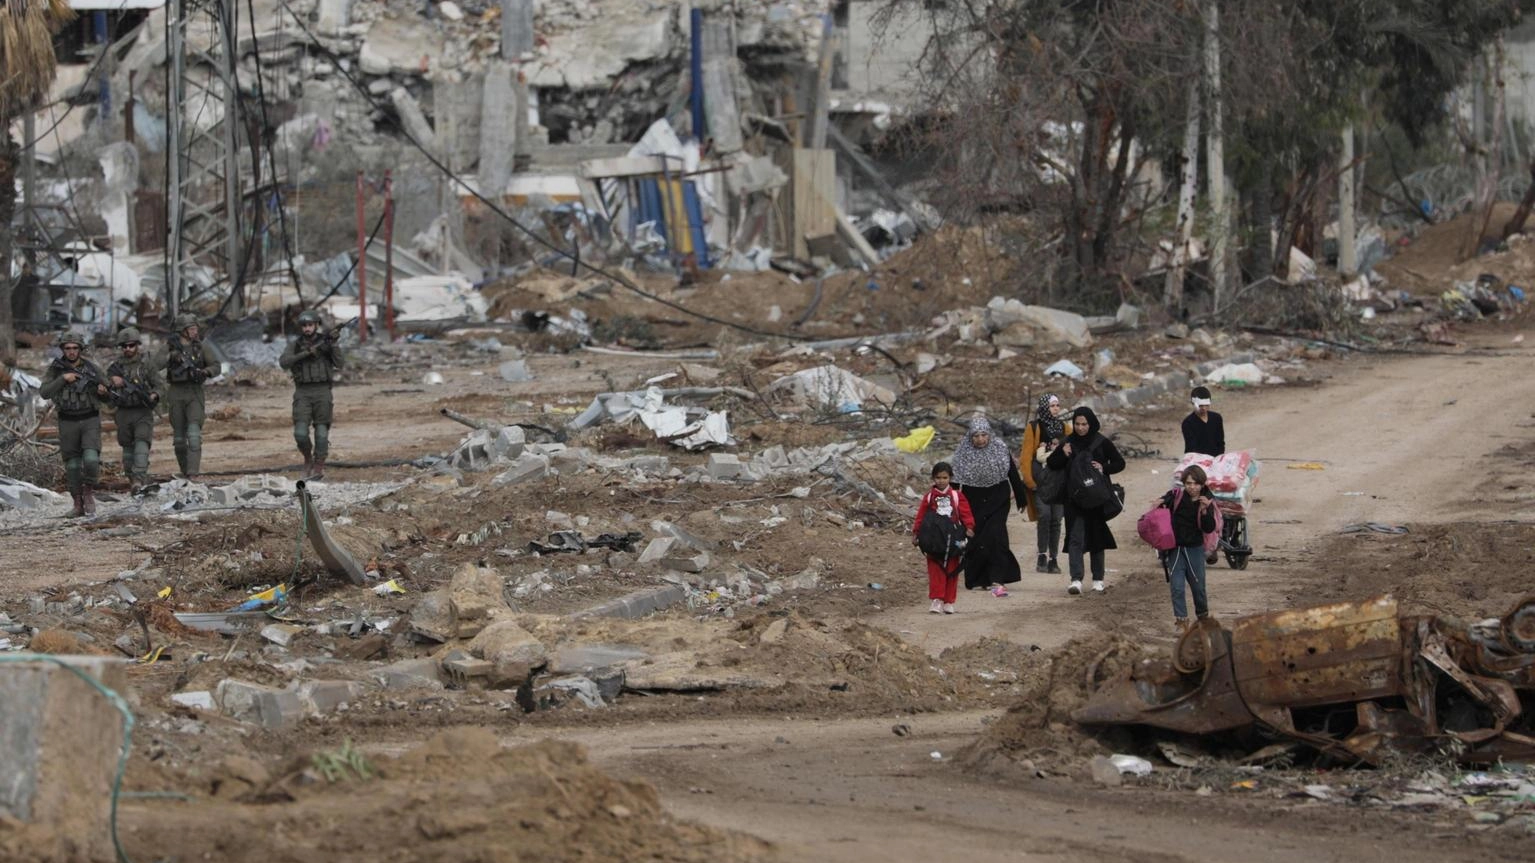 'Israele accetta di designare ampie safe zone a Gaza'